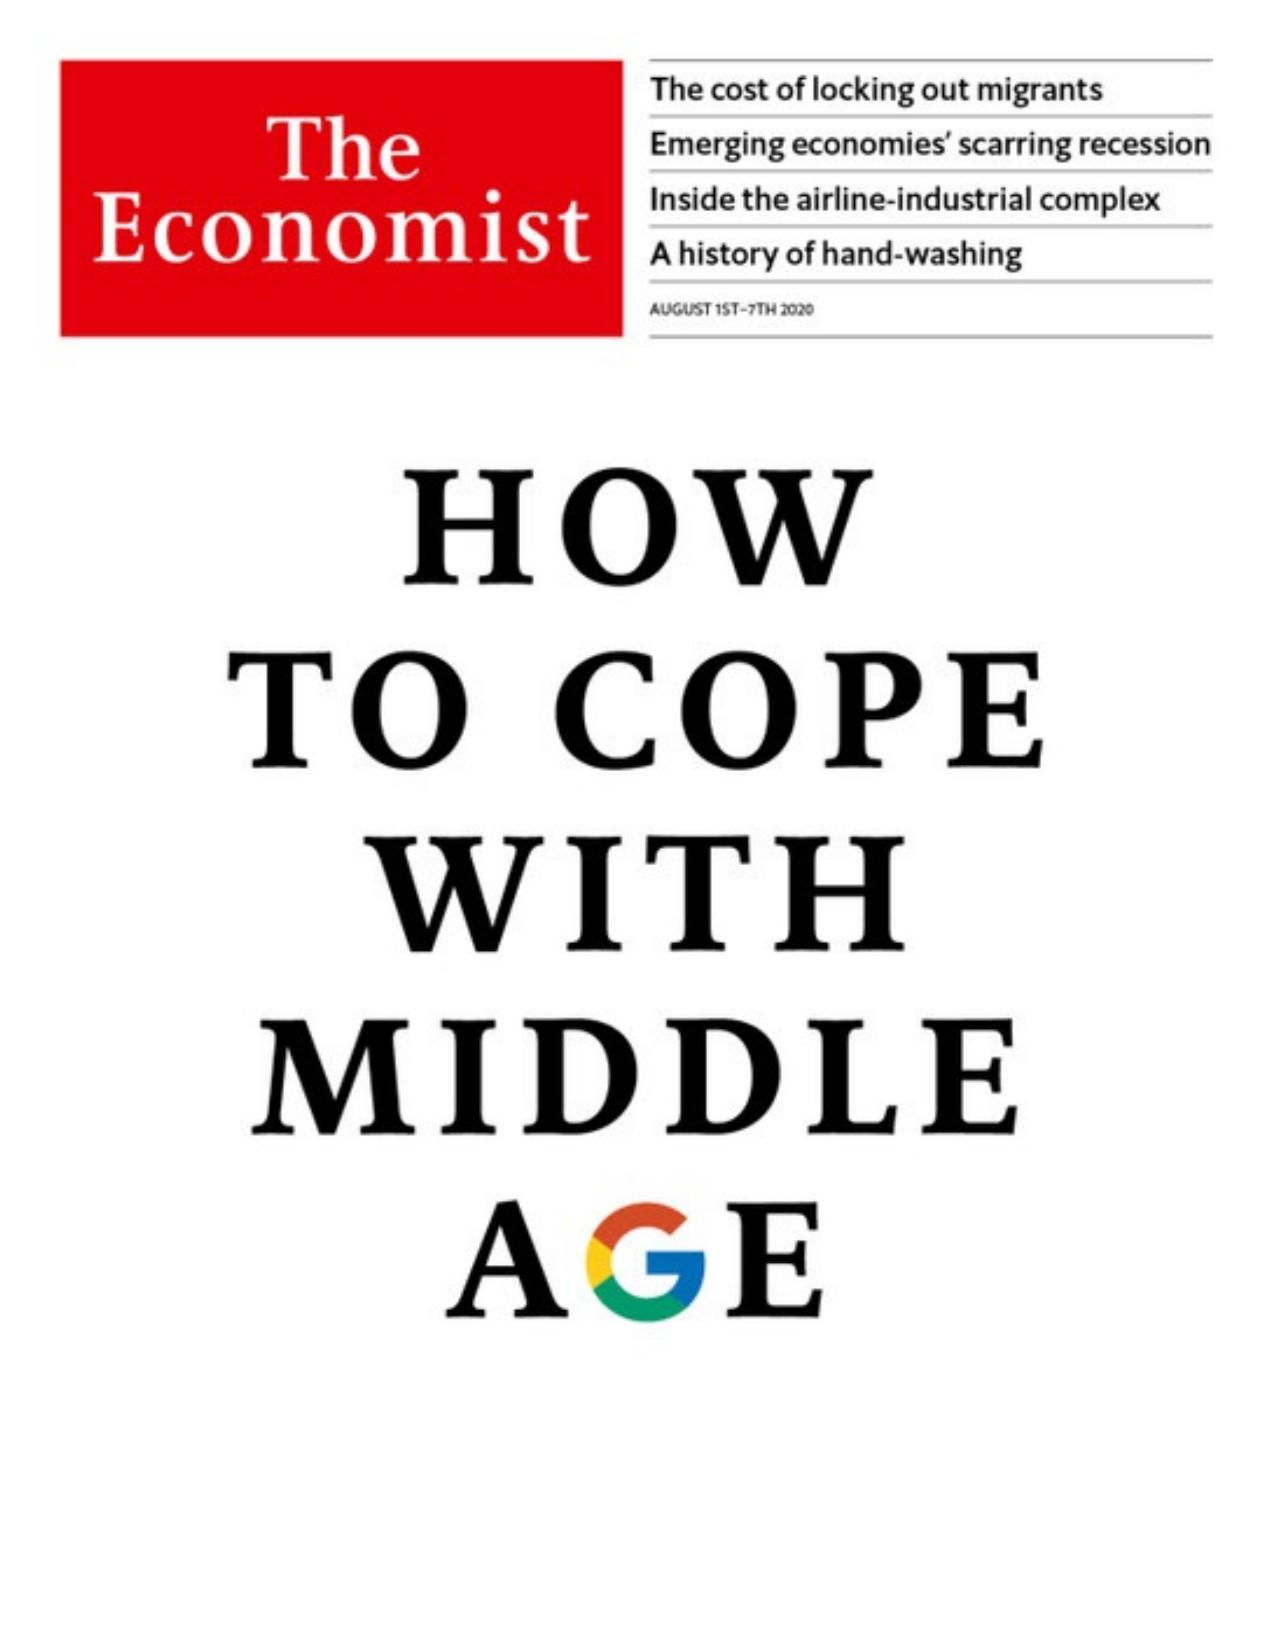 The Economist (20200801) by calibre